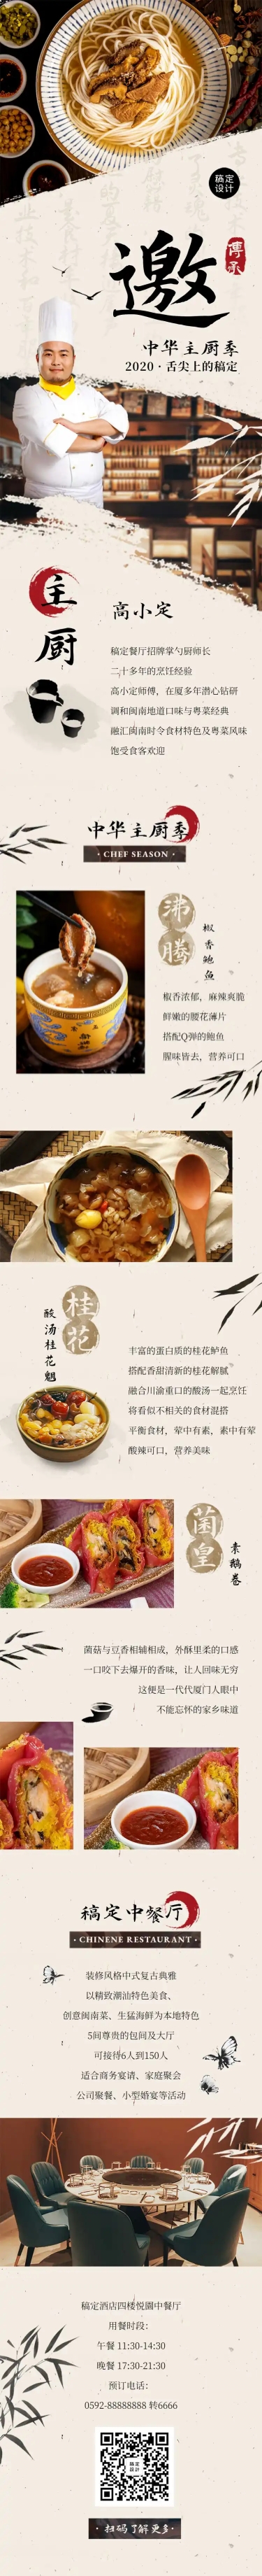 餐饮宣传页品牌介绍中国风文章长图预览效果